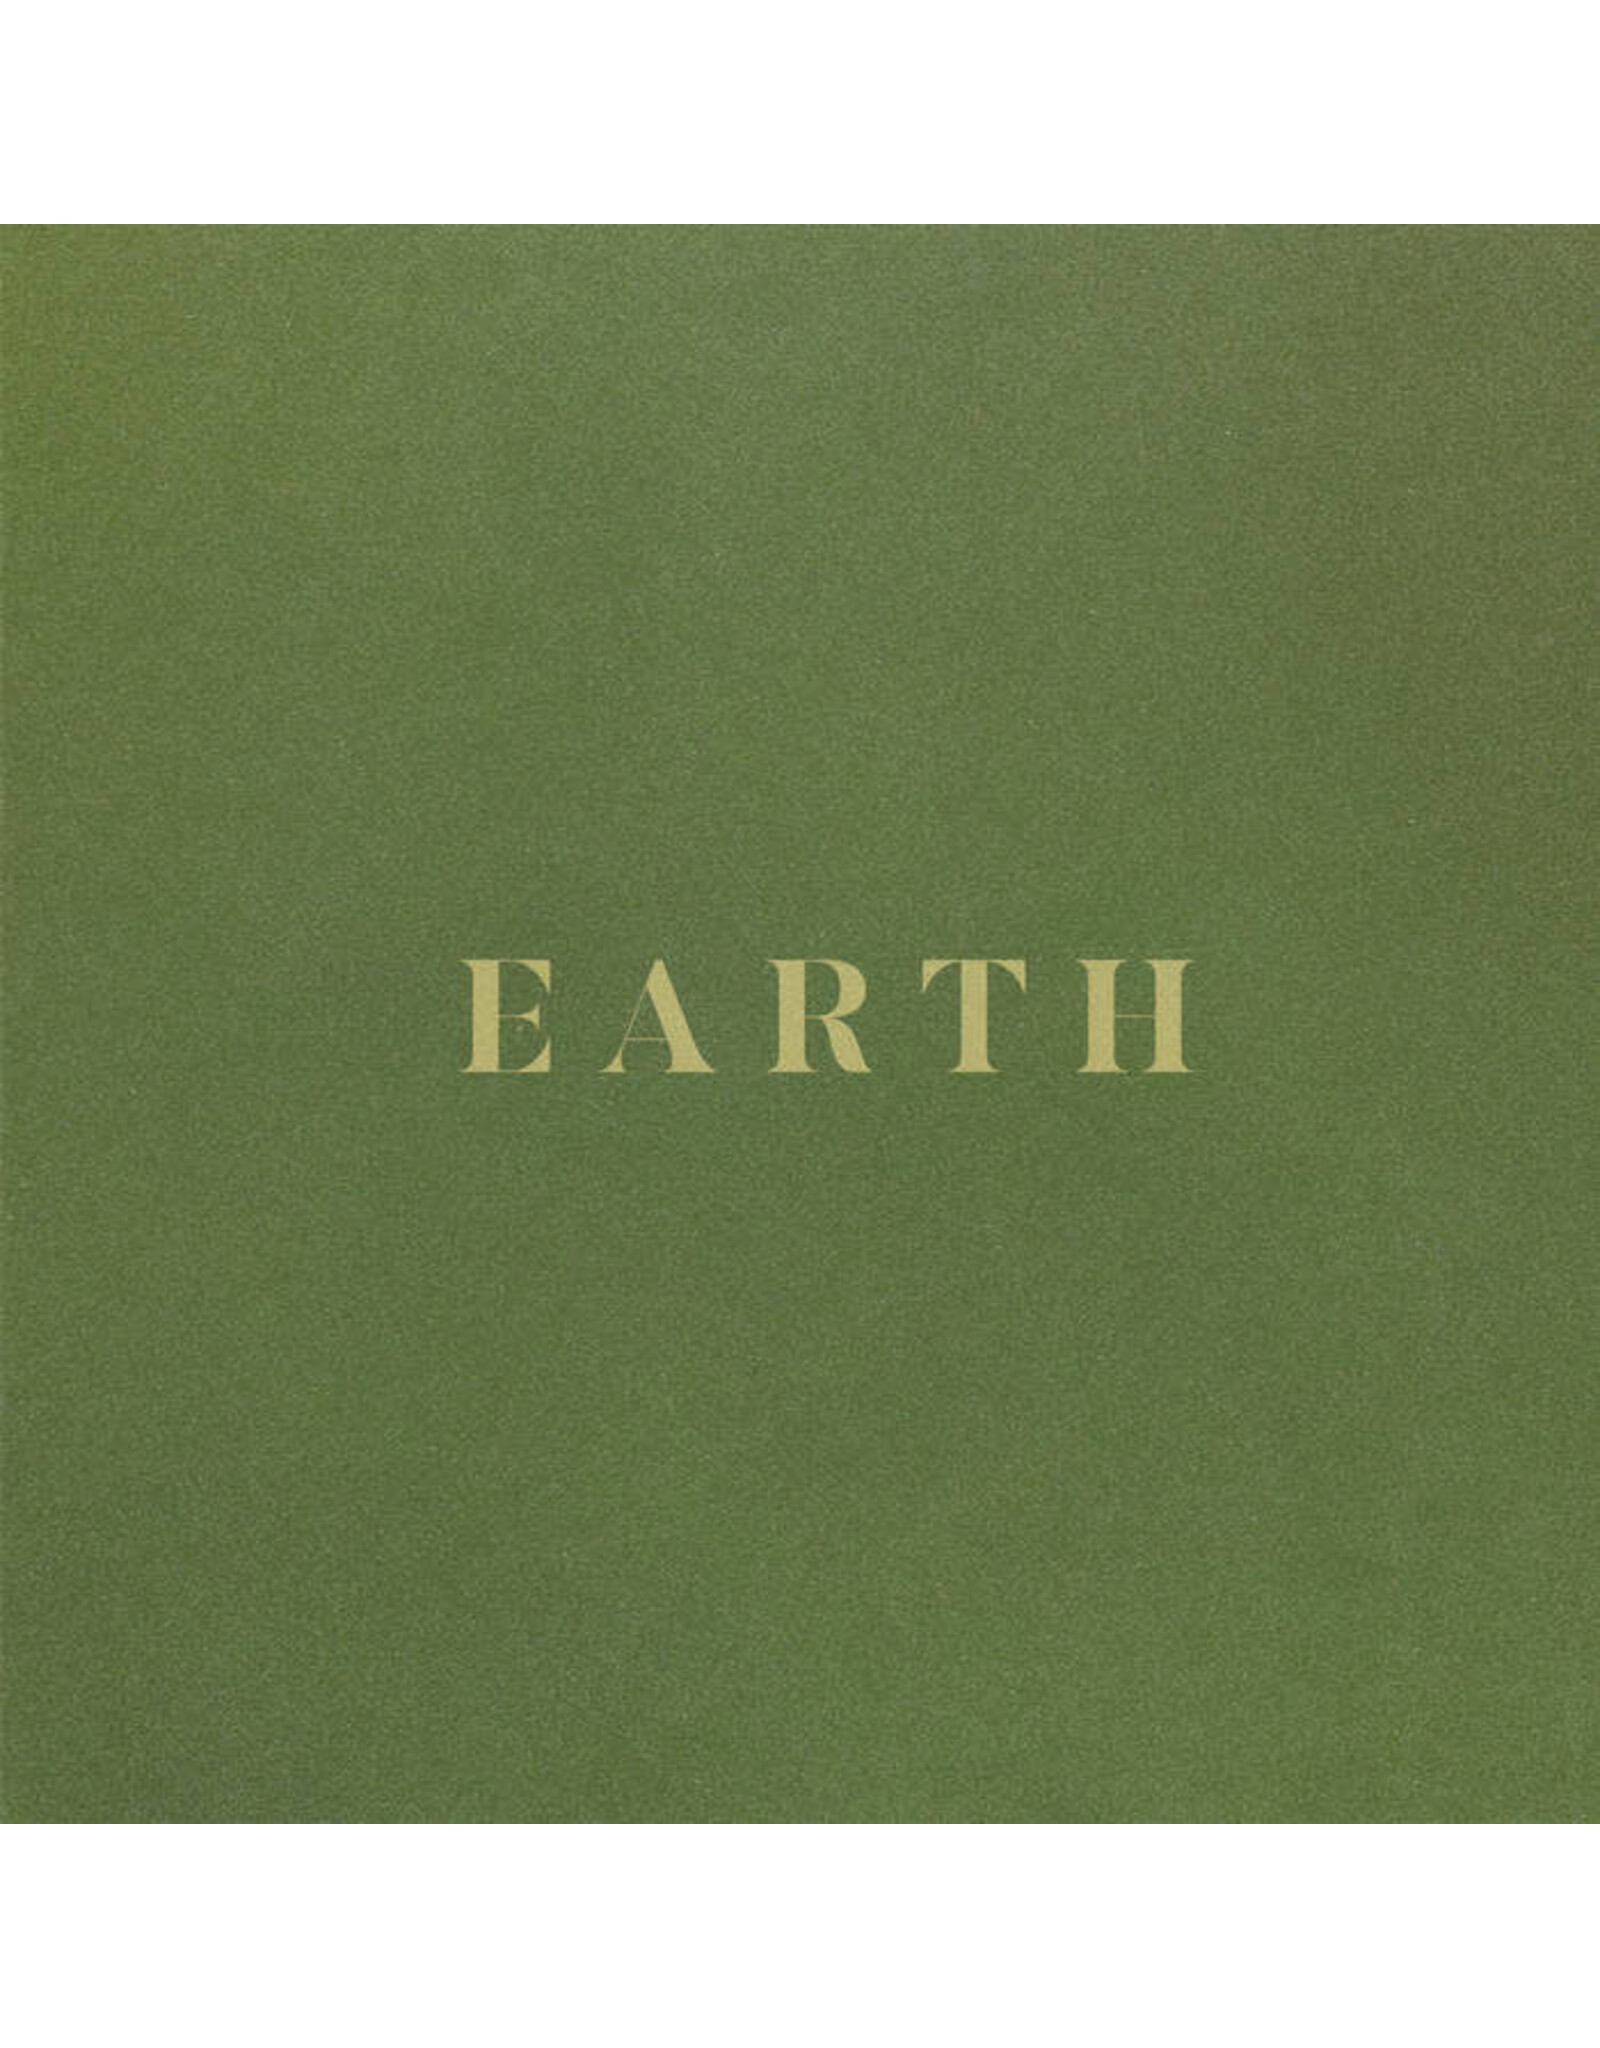 Forever Living Originals Sault: Earth LP